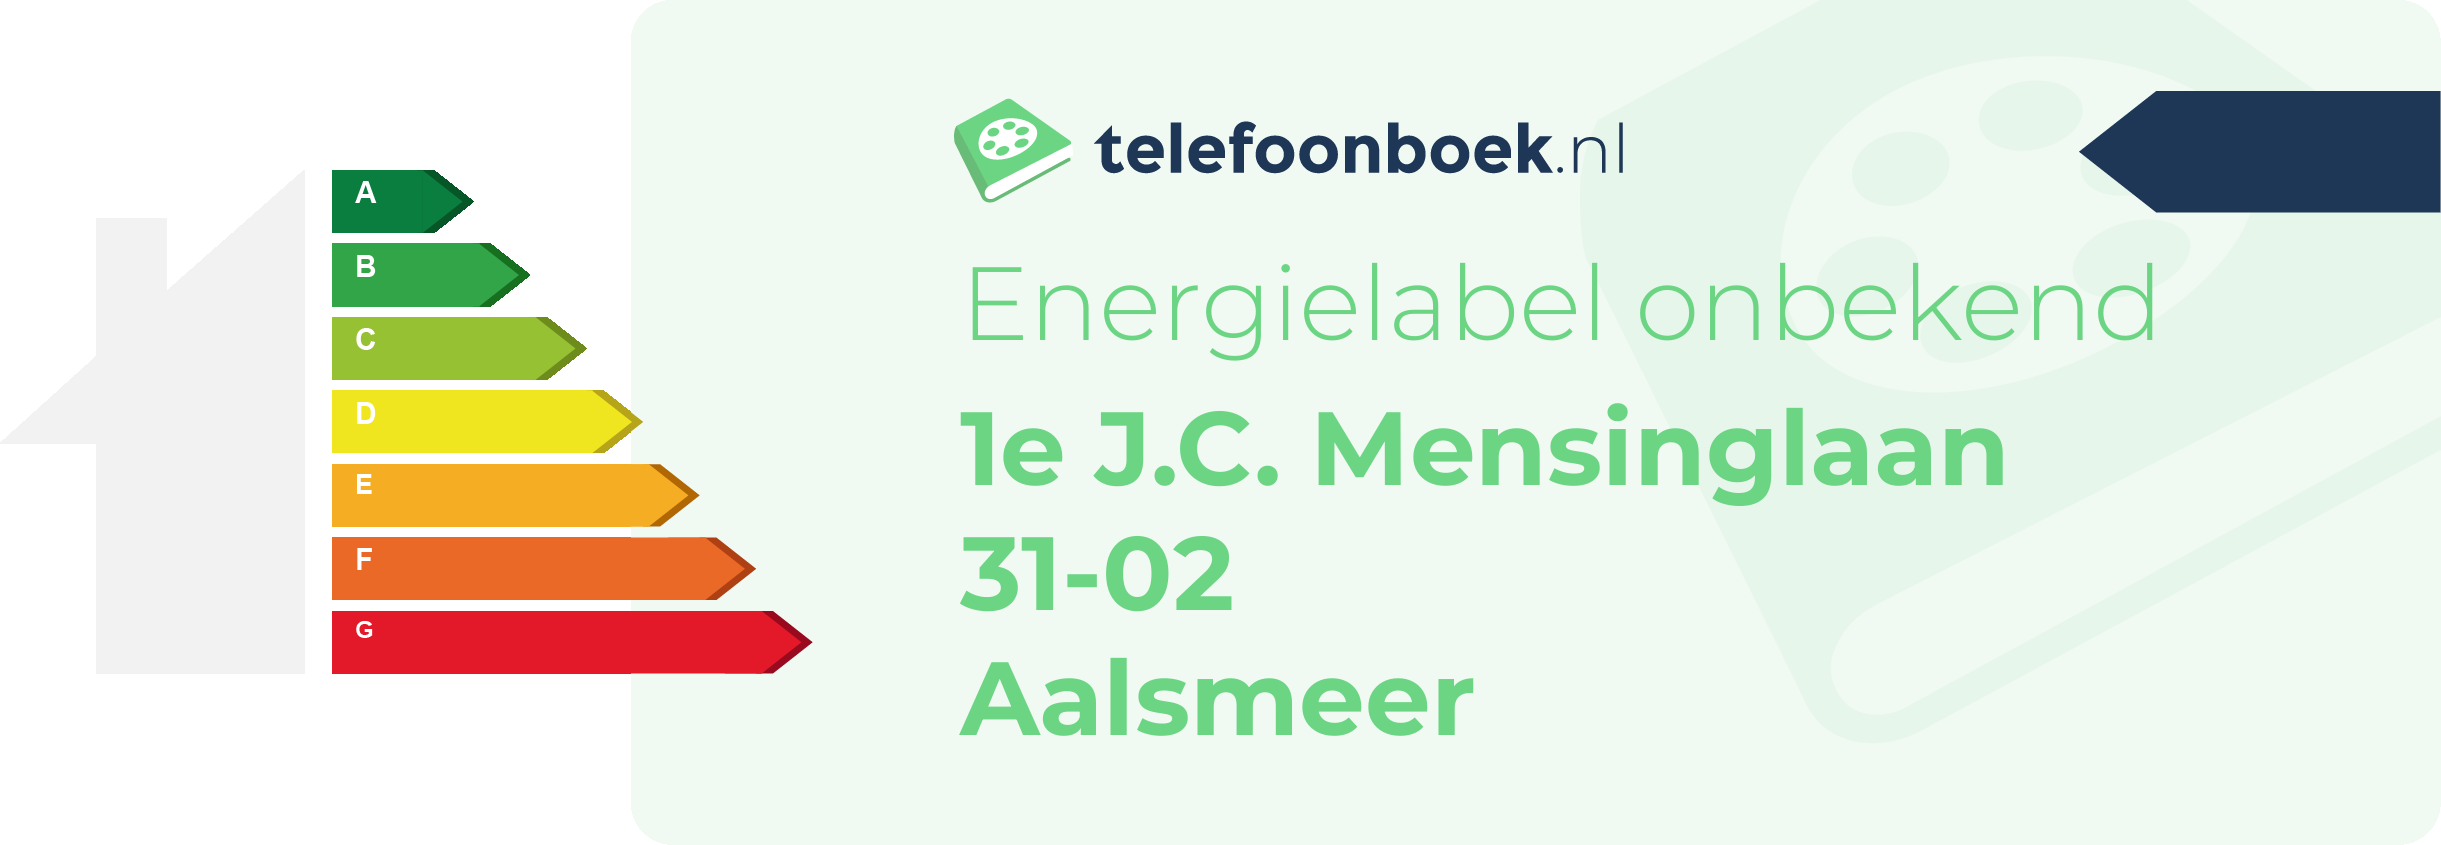 Energielabel 1e J.C. Mensinglaan 31-02 Aalsmeer